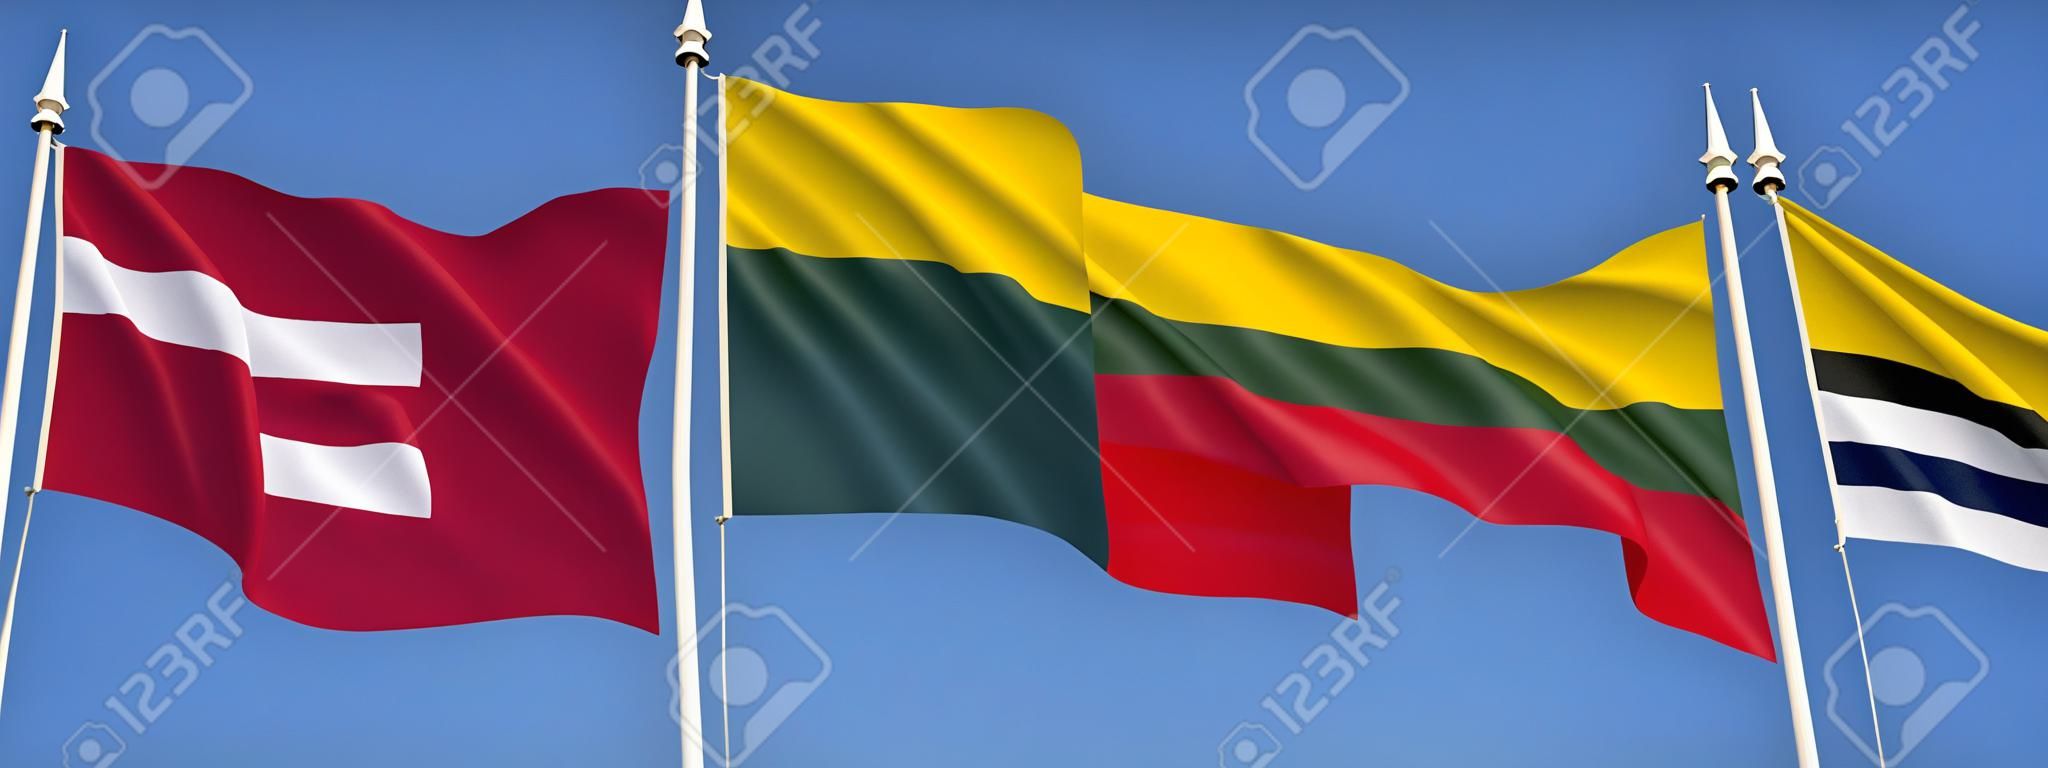 バルト - ラトビア、リトアニア、エストニアのフラグです。